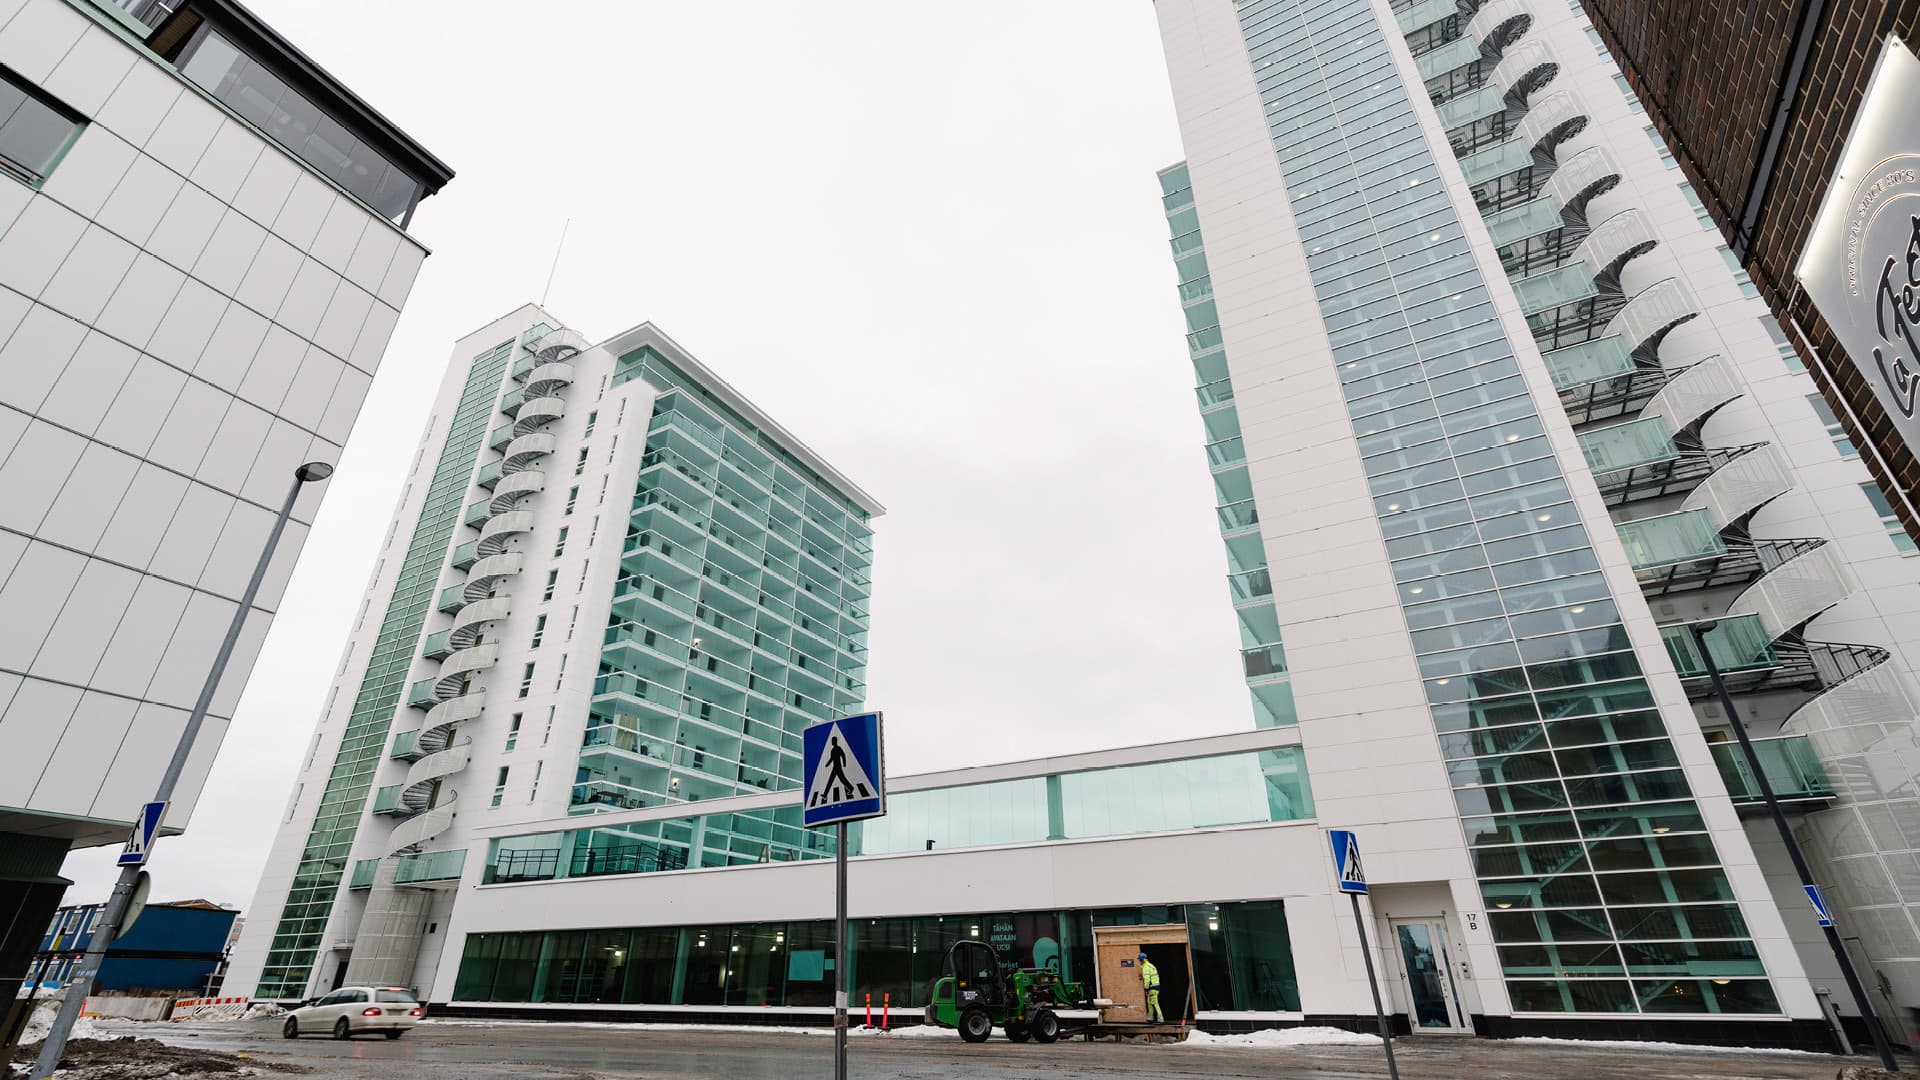 Myytävät asunnot Oulun Asemantorni III. Keskusta. Oulun Asemantorni III kutsuu huippusijainnillaan Oulun ytimessä.